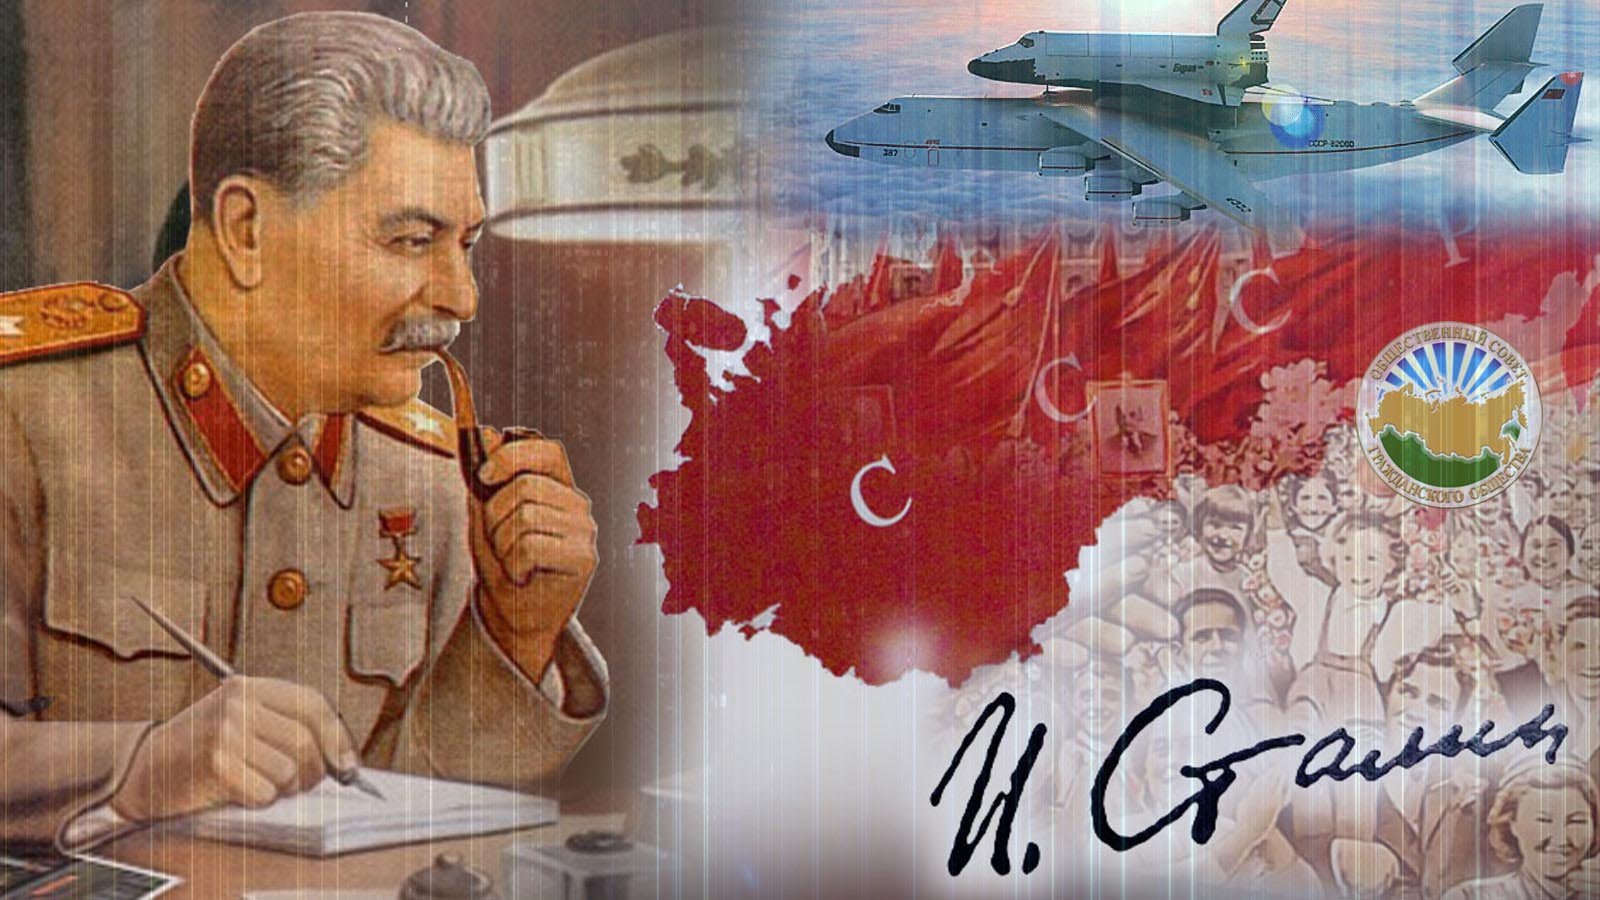 Имя отца народов. СССР Сталин. Сталин на фоне народа. Сталин вождь народов. Плакаты сталинской эпохи.